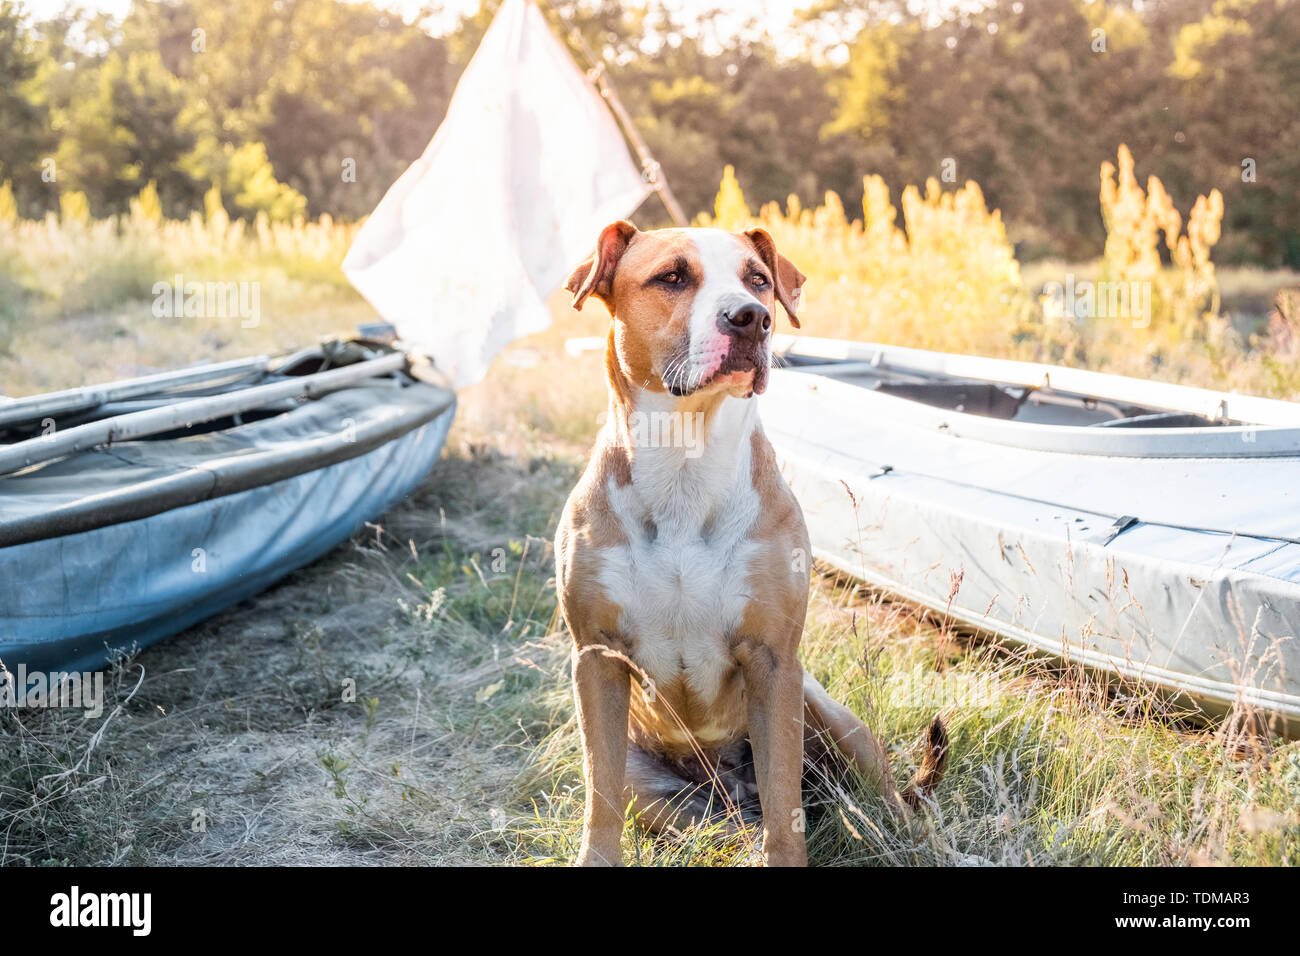 Ein Hund sitzt vor dem Kanu Boote im schönen Abendlicht. Aktive Erholung mit Haustieren Konzept: American Staffordshire Terrier in einem Kajak ri Stockfoto